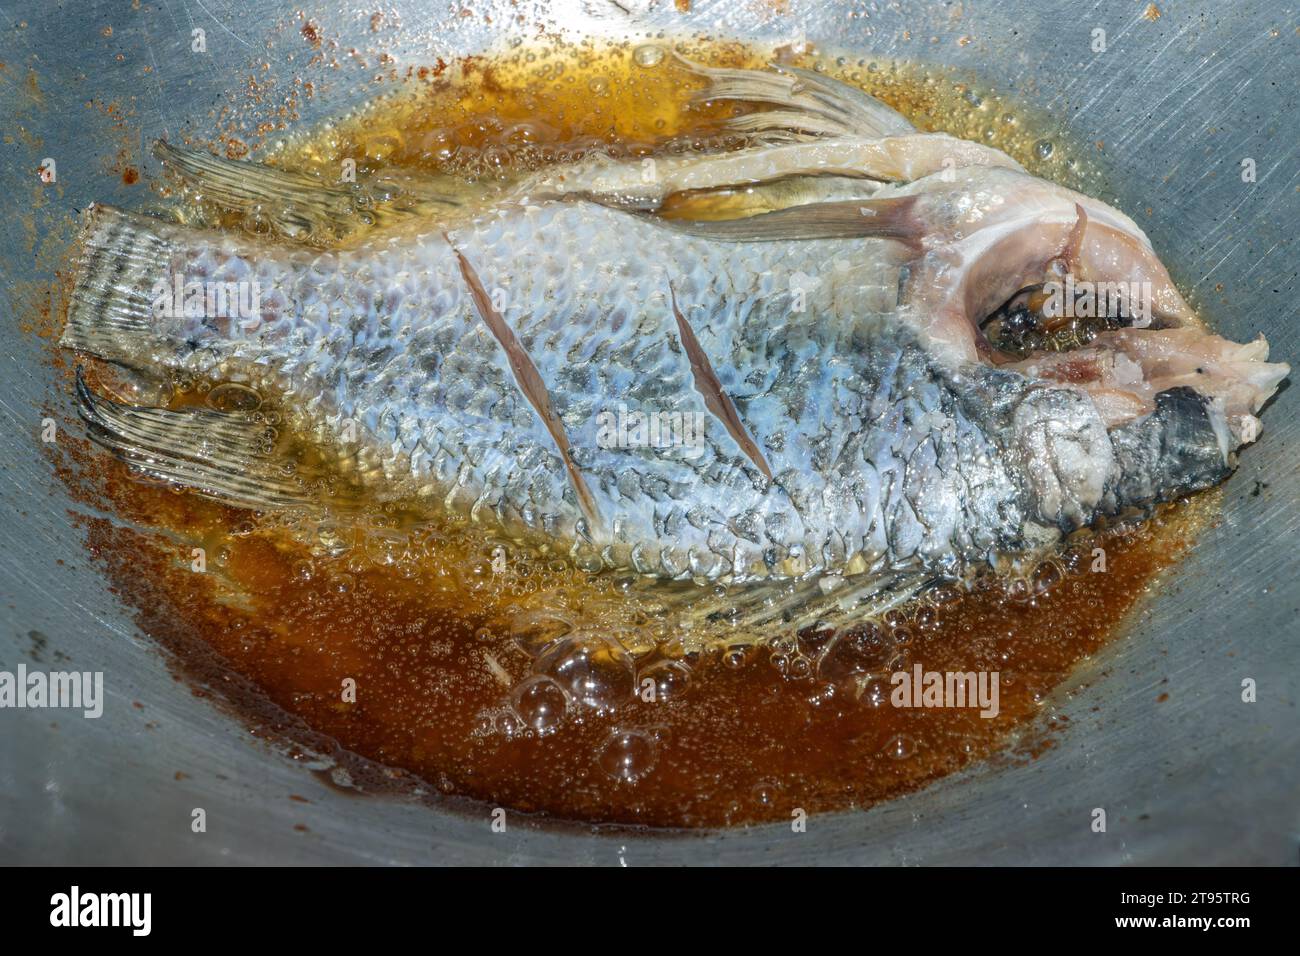 Il pesce tilapia viene fritto in olio in una padella, vista dall'alto Foto Stock